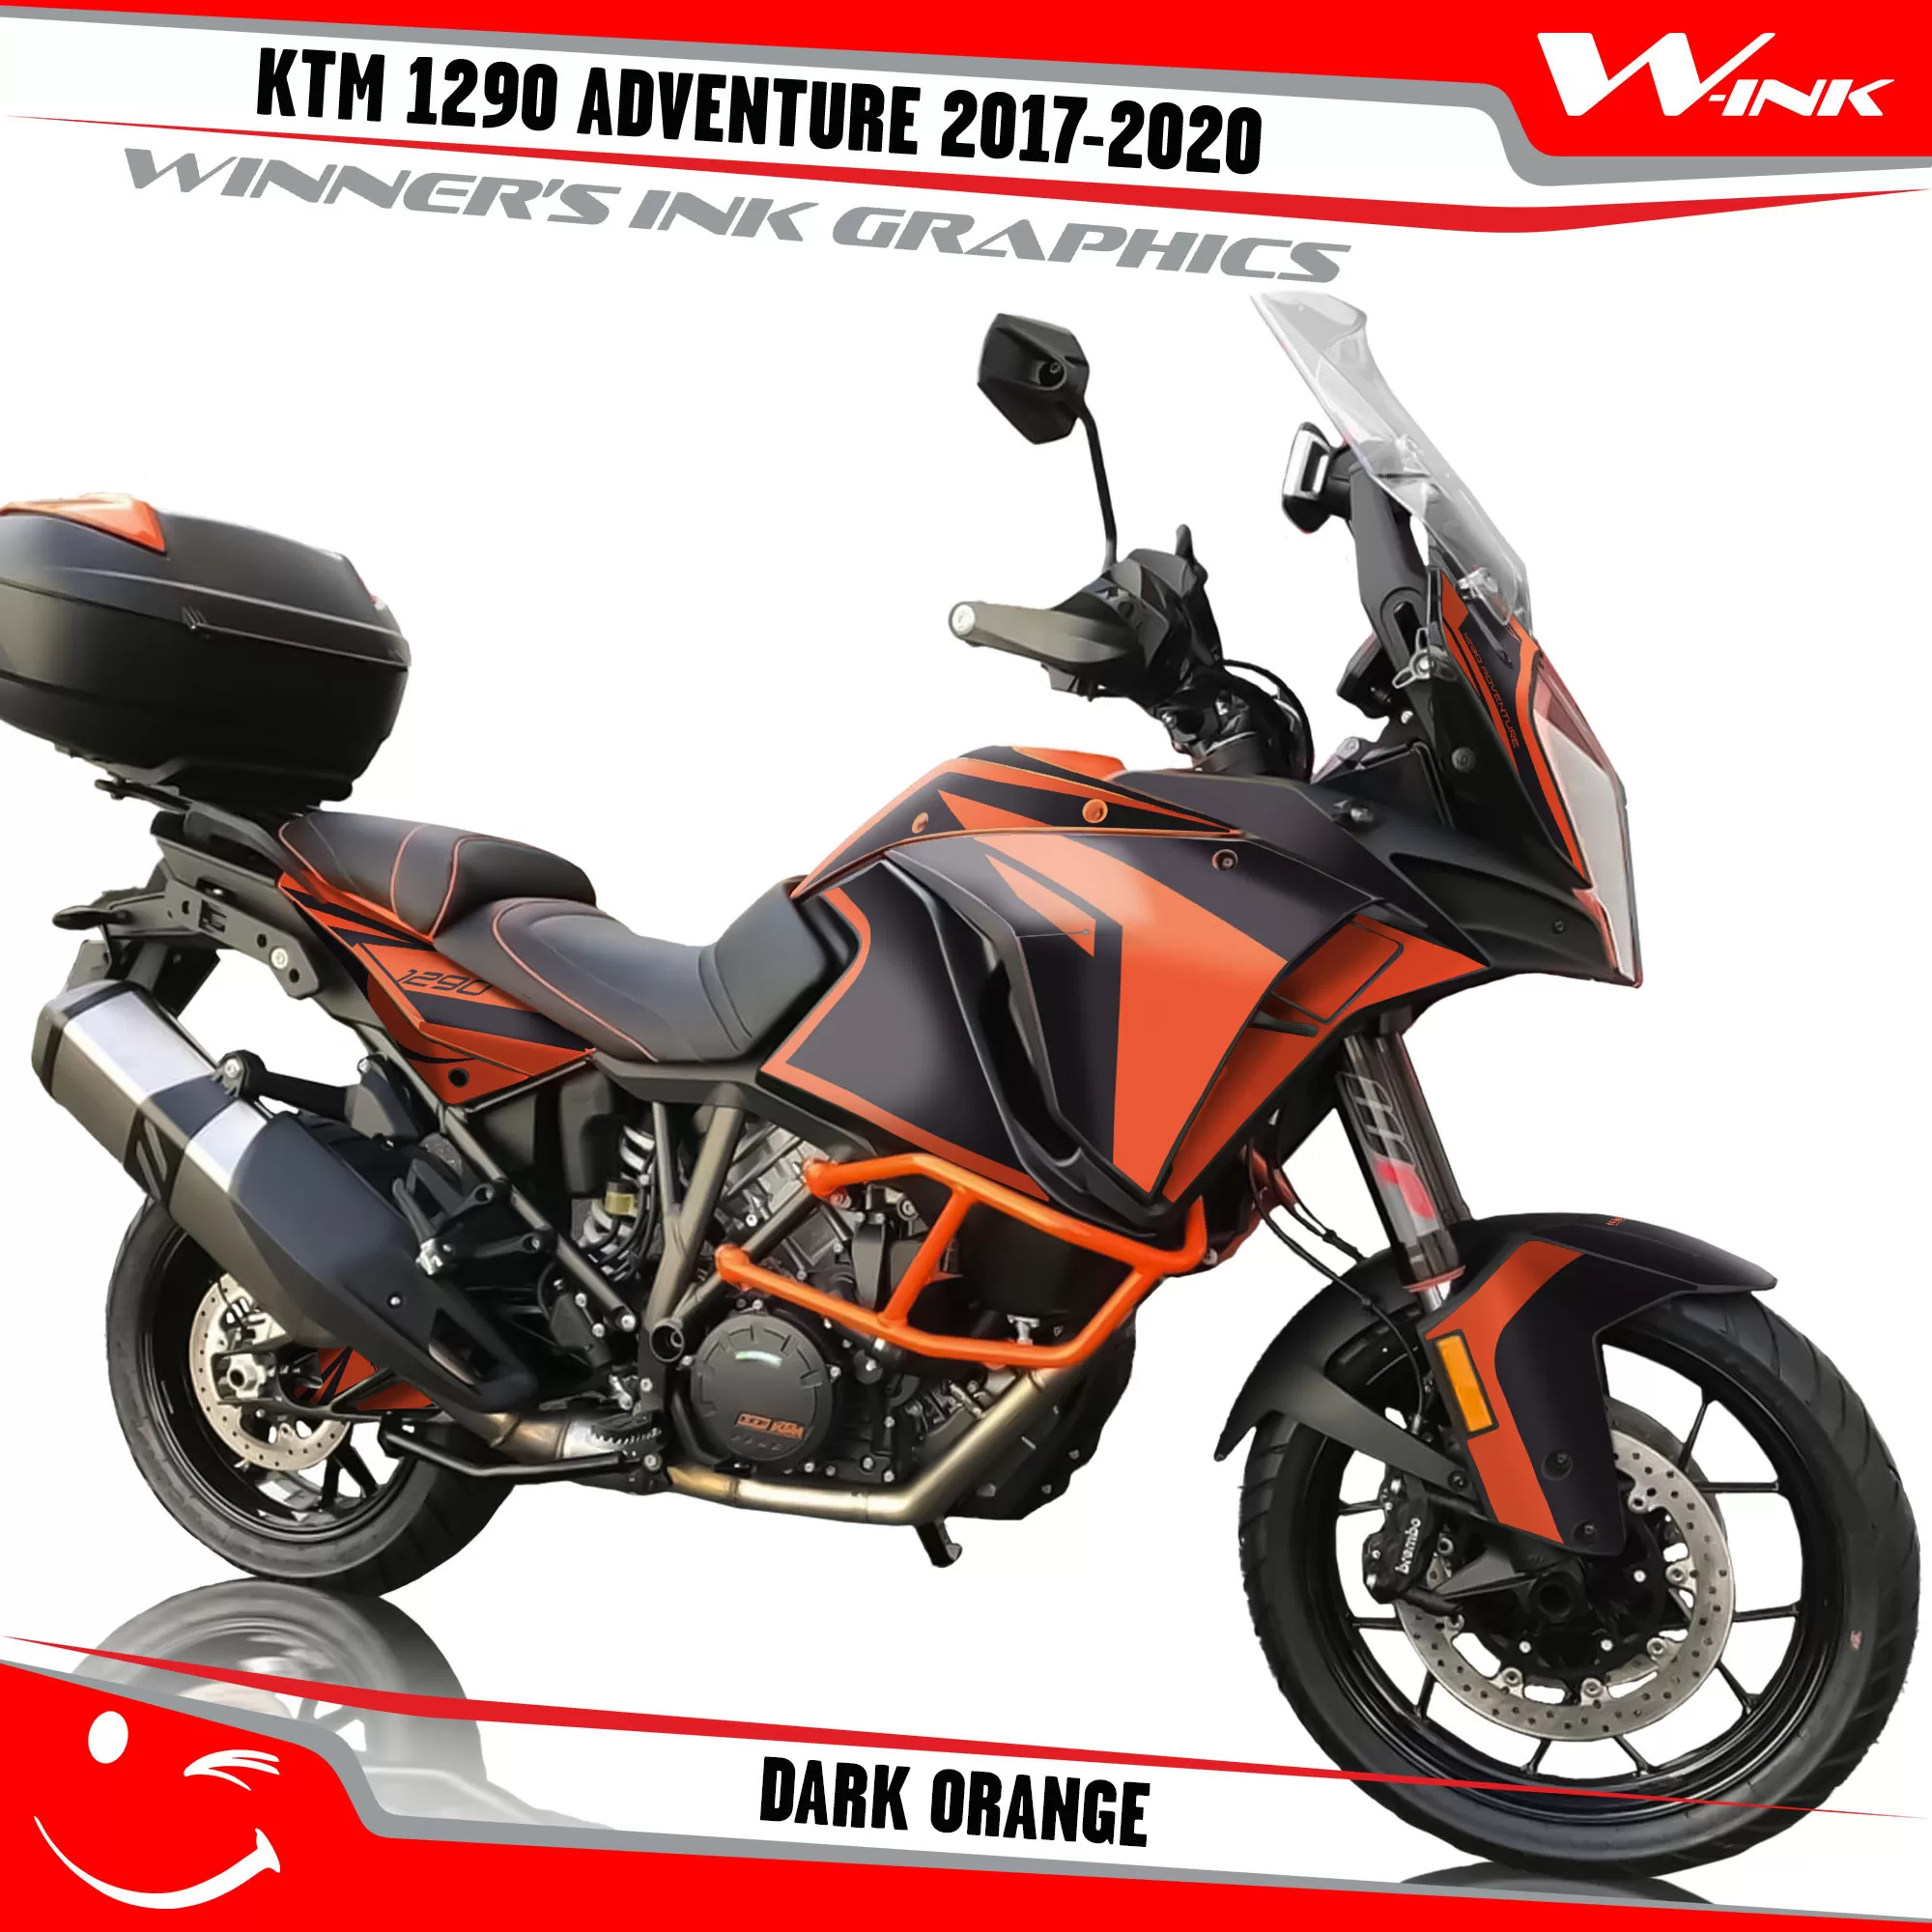 KTM-Adventure-1290-2017-2018-2019-2020-graphics-kit-and-decals-Dark-Orange